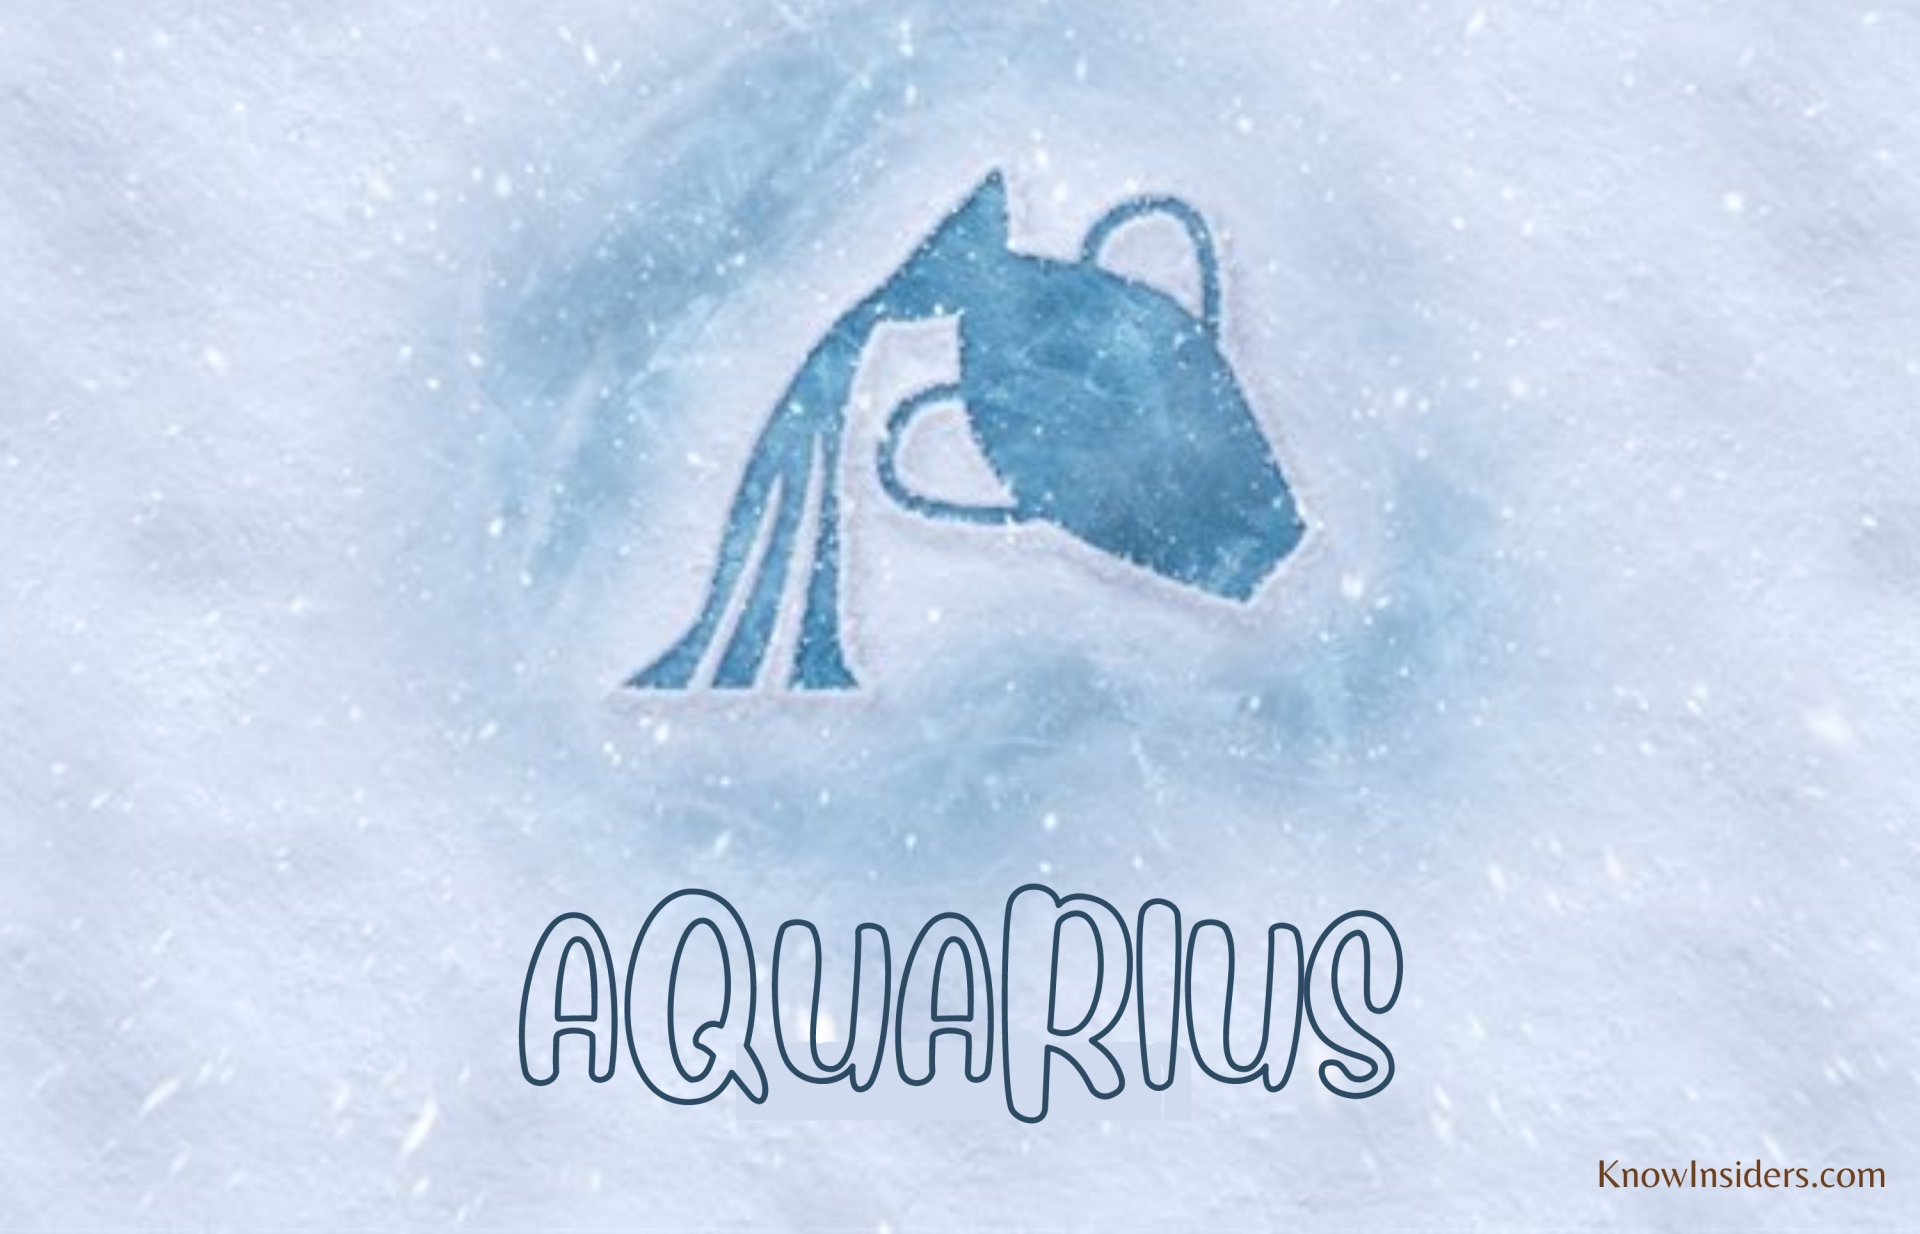 AQUARIUS Horoscope: Characteristics, Astrological Predictions & Compatibility